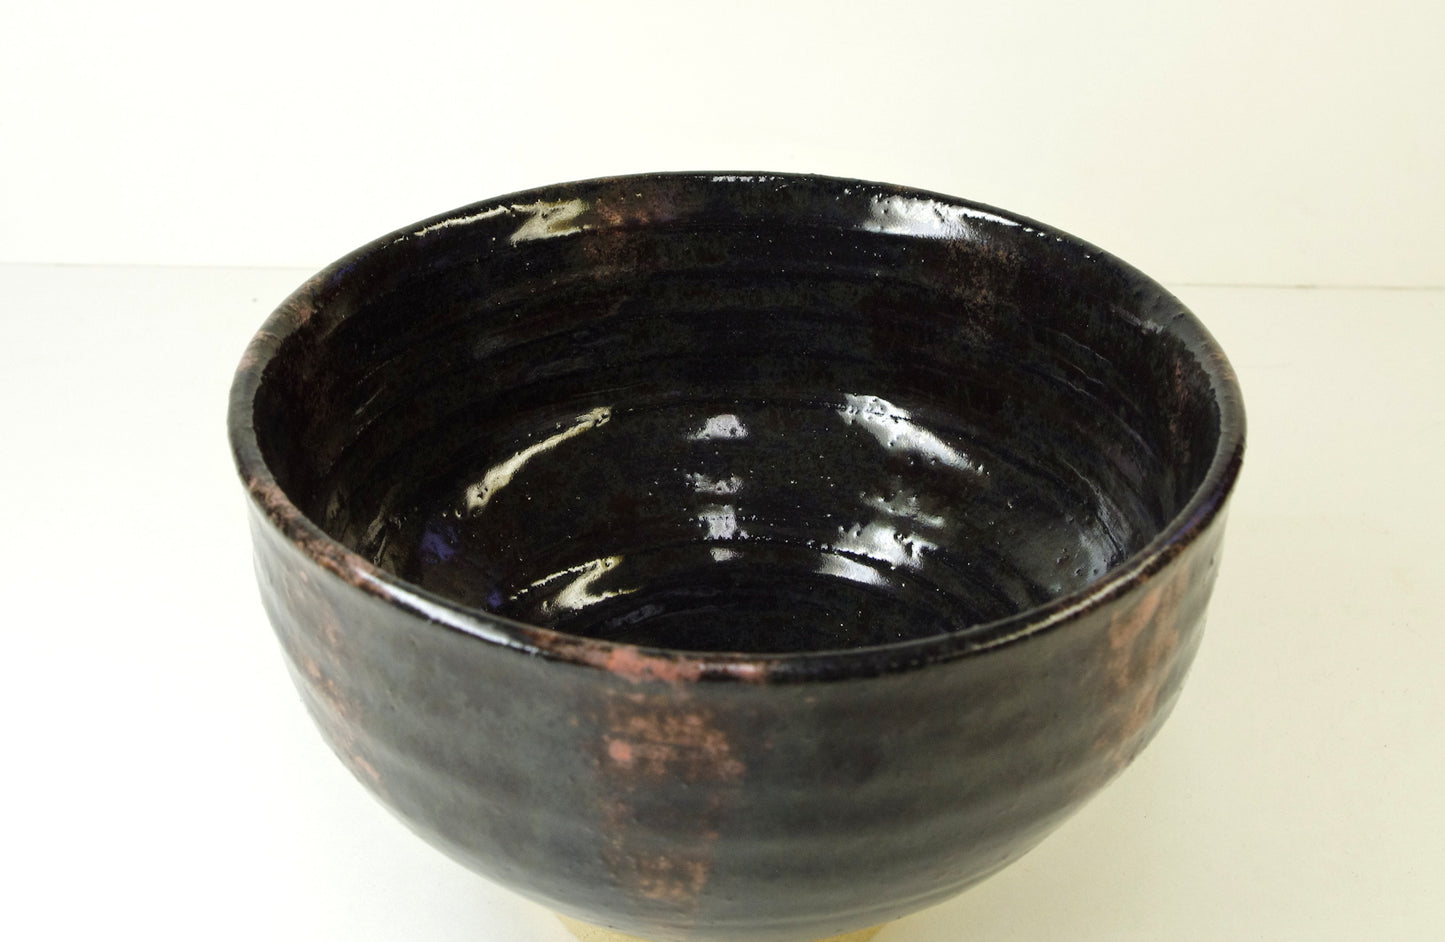 2095, Hand Thrown Stoneware Ikebana Vase, 6 x 3 3/4 inches